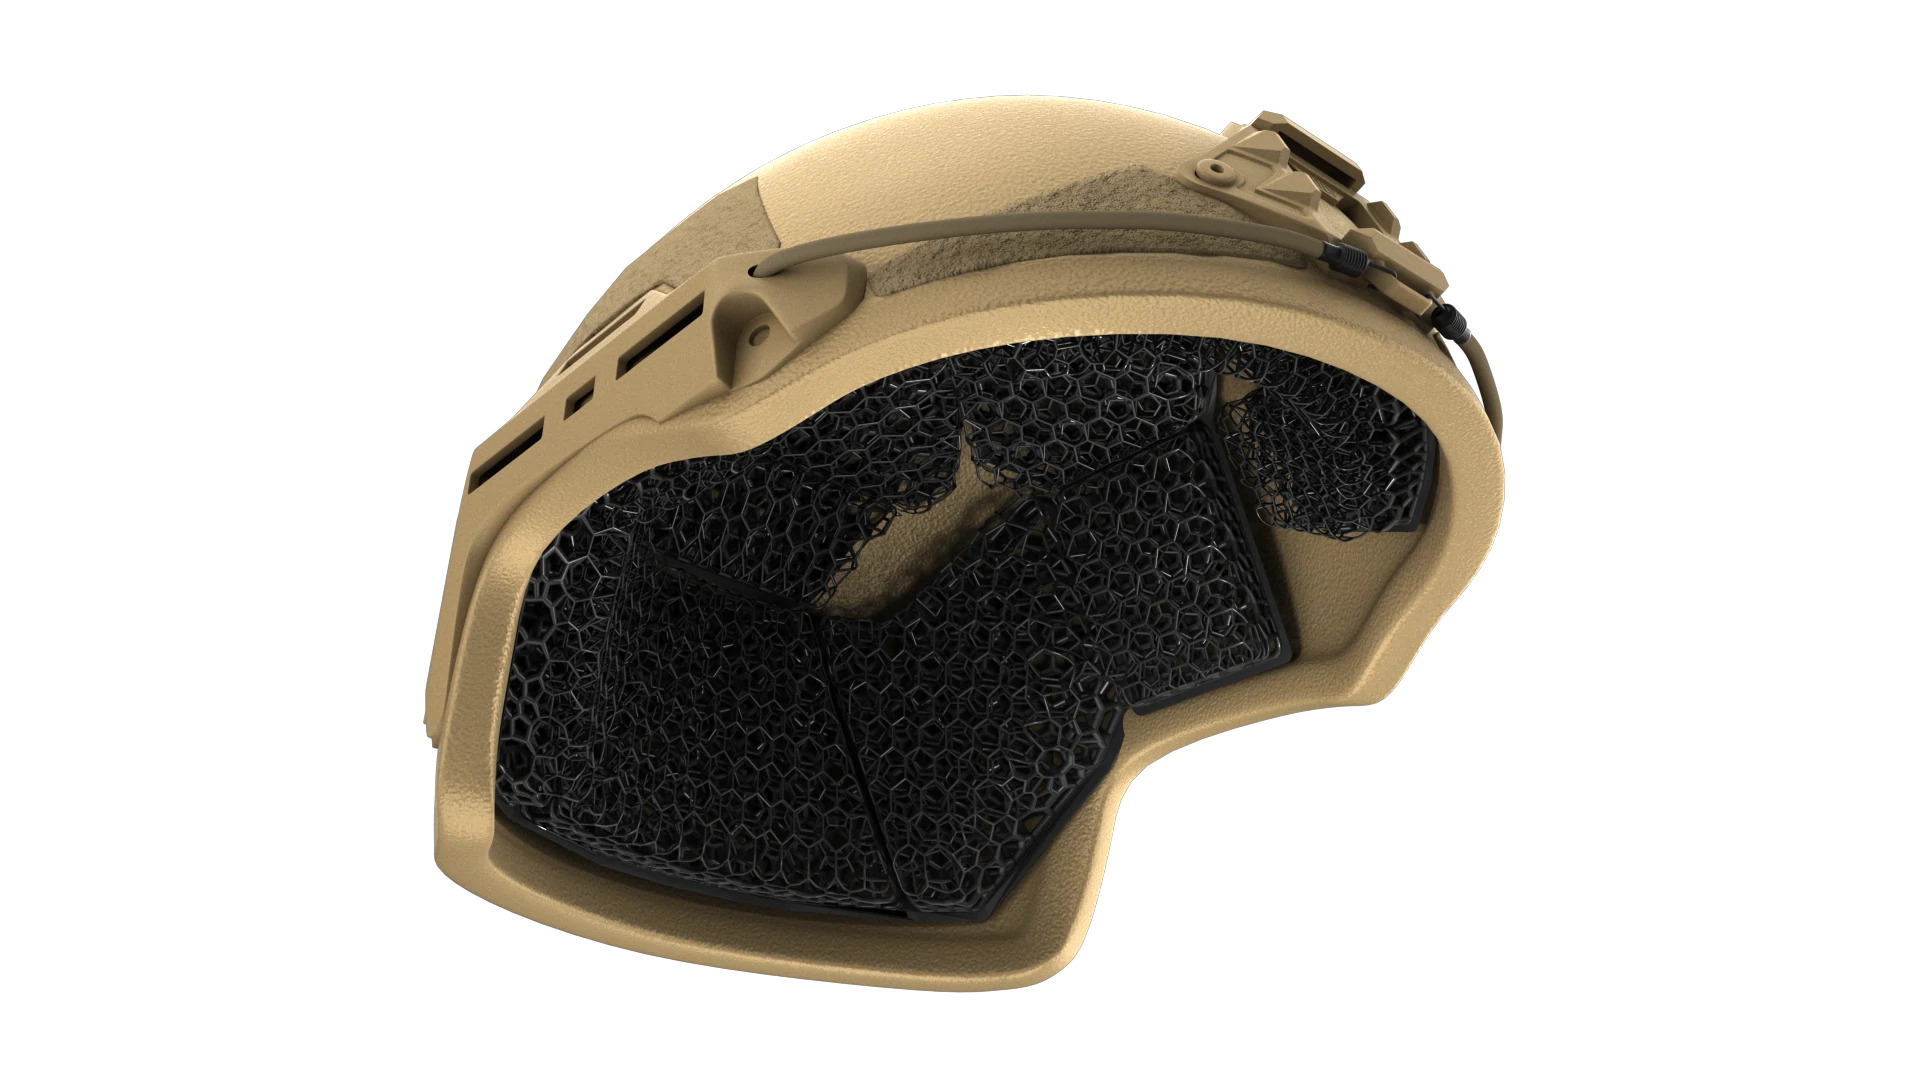 Micro lattice helmet Pad System on a helmet